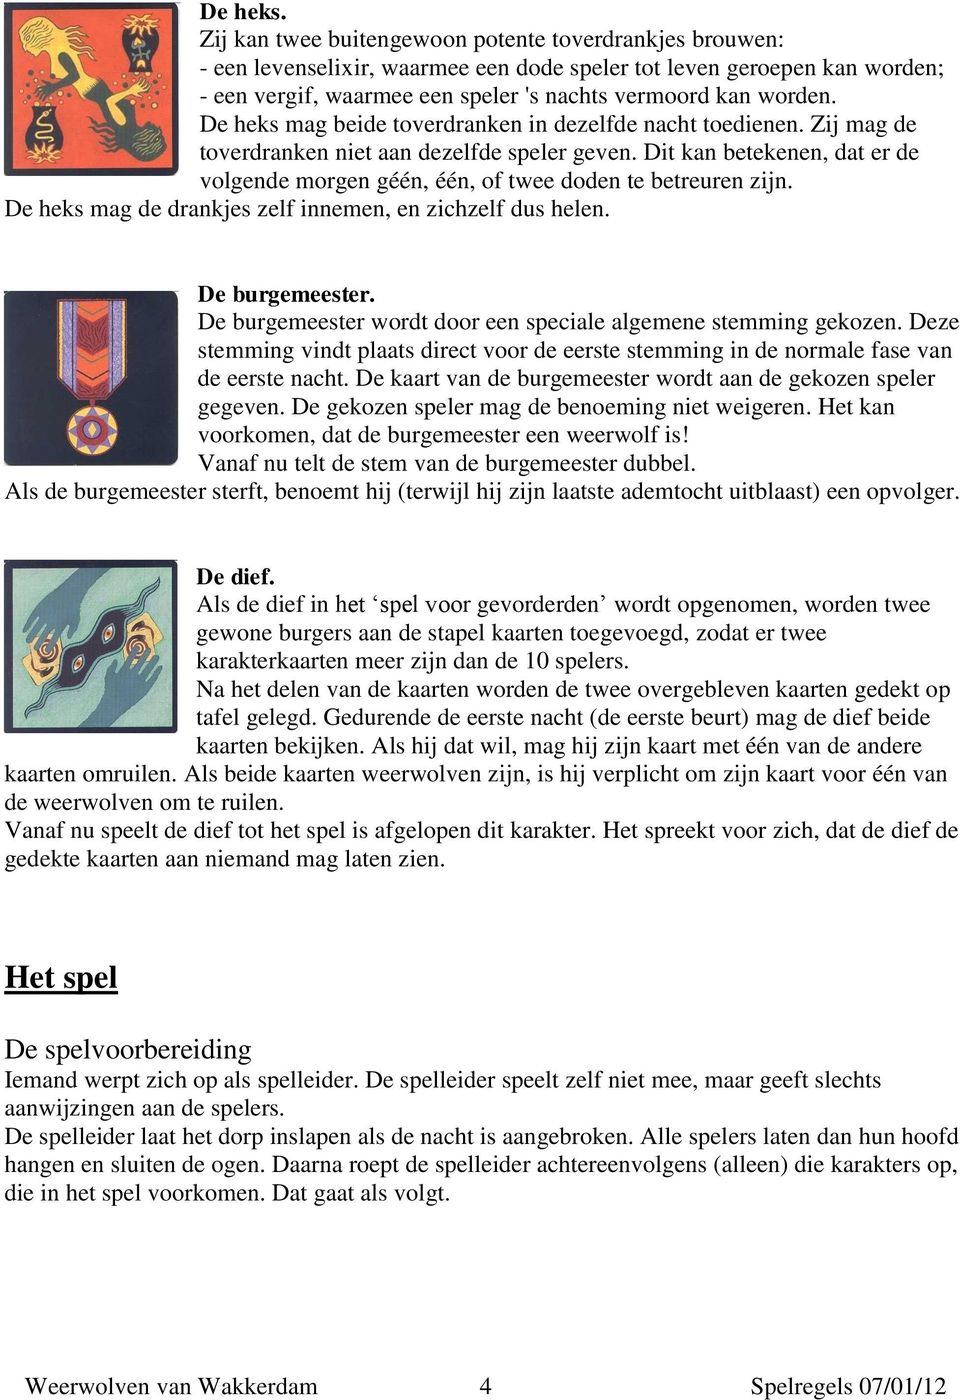 DE WEERWOLVEN VAN WAKKERDAM PDF Download